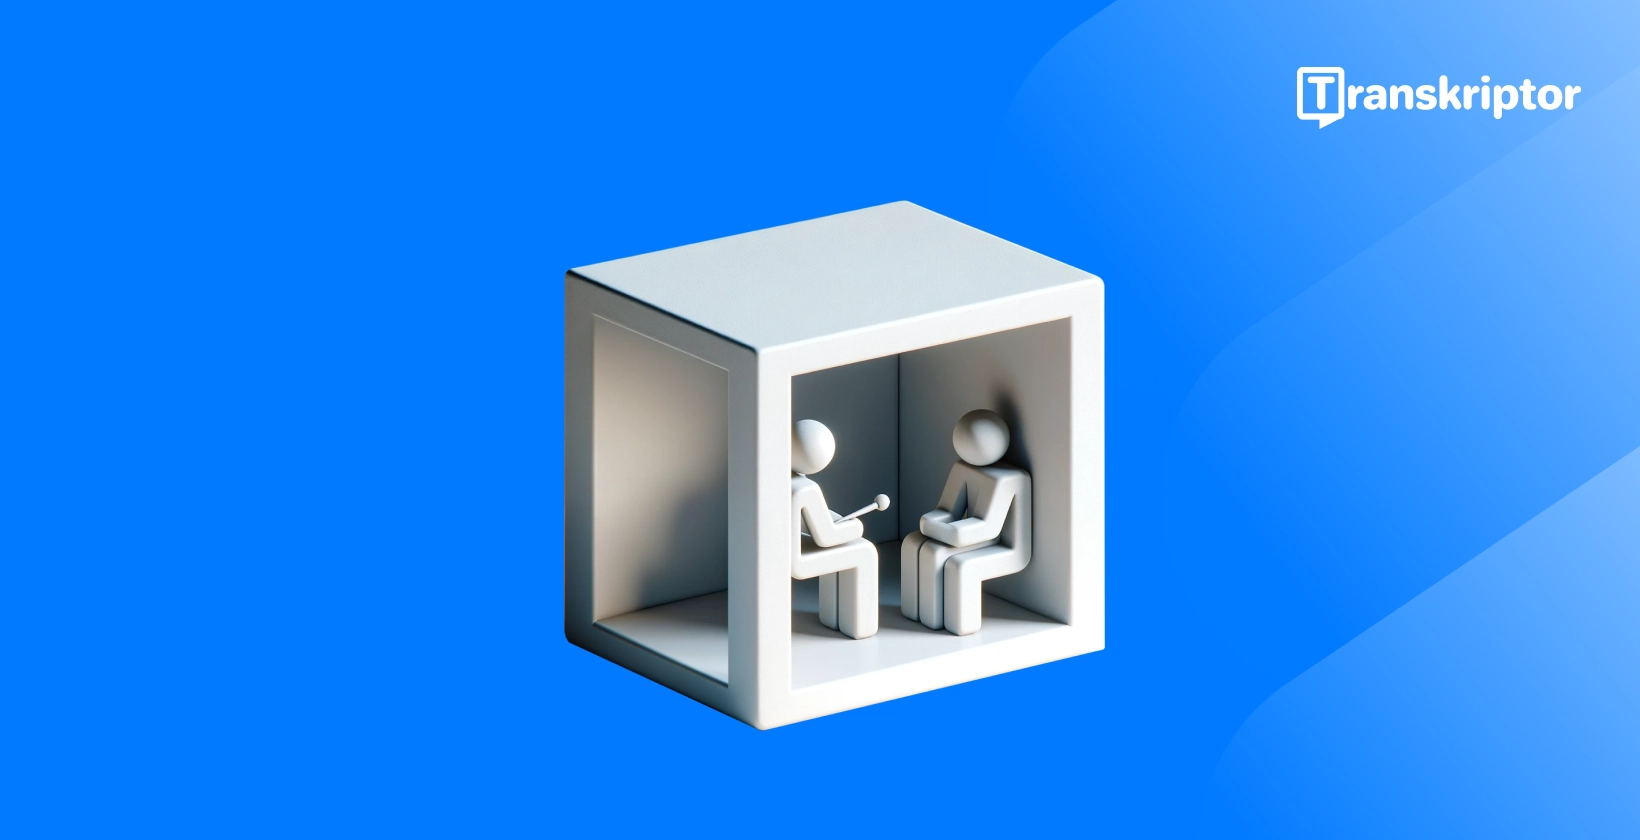 Prepisivanje intervjua prikazanih 3D figurama u kutiji, naglašavajući postupak intervjua radi jasnoće.